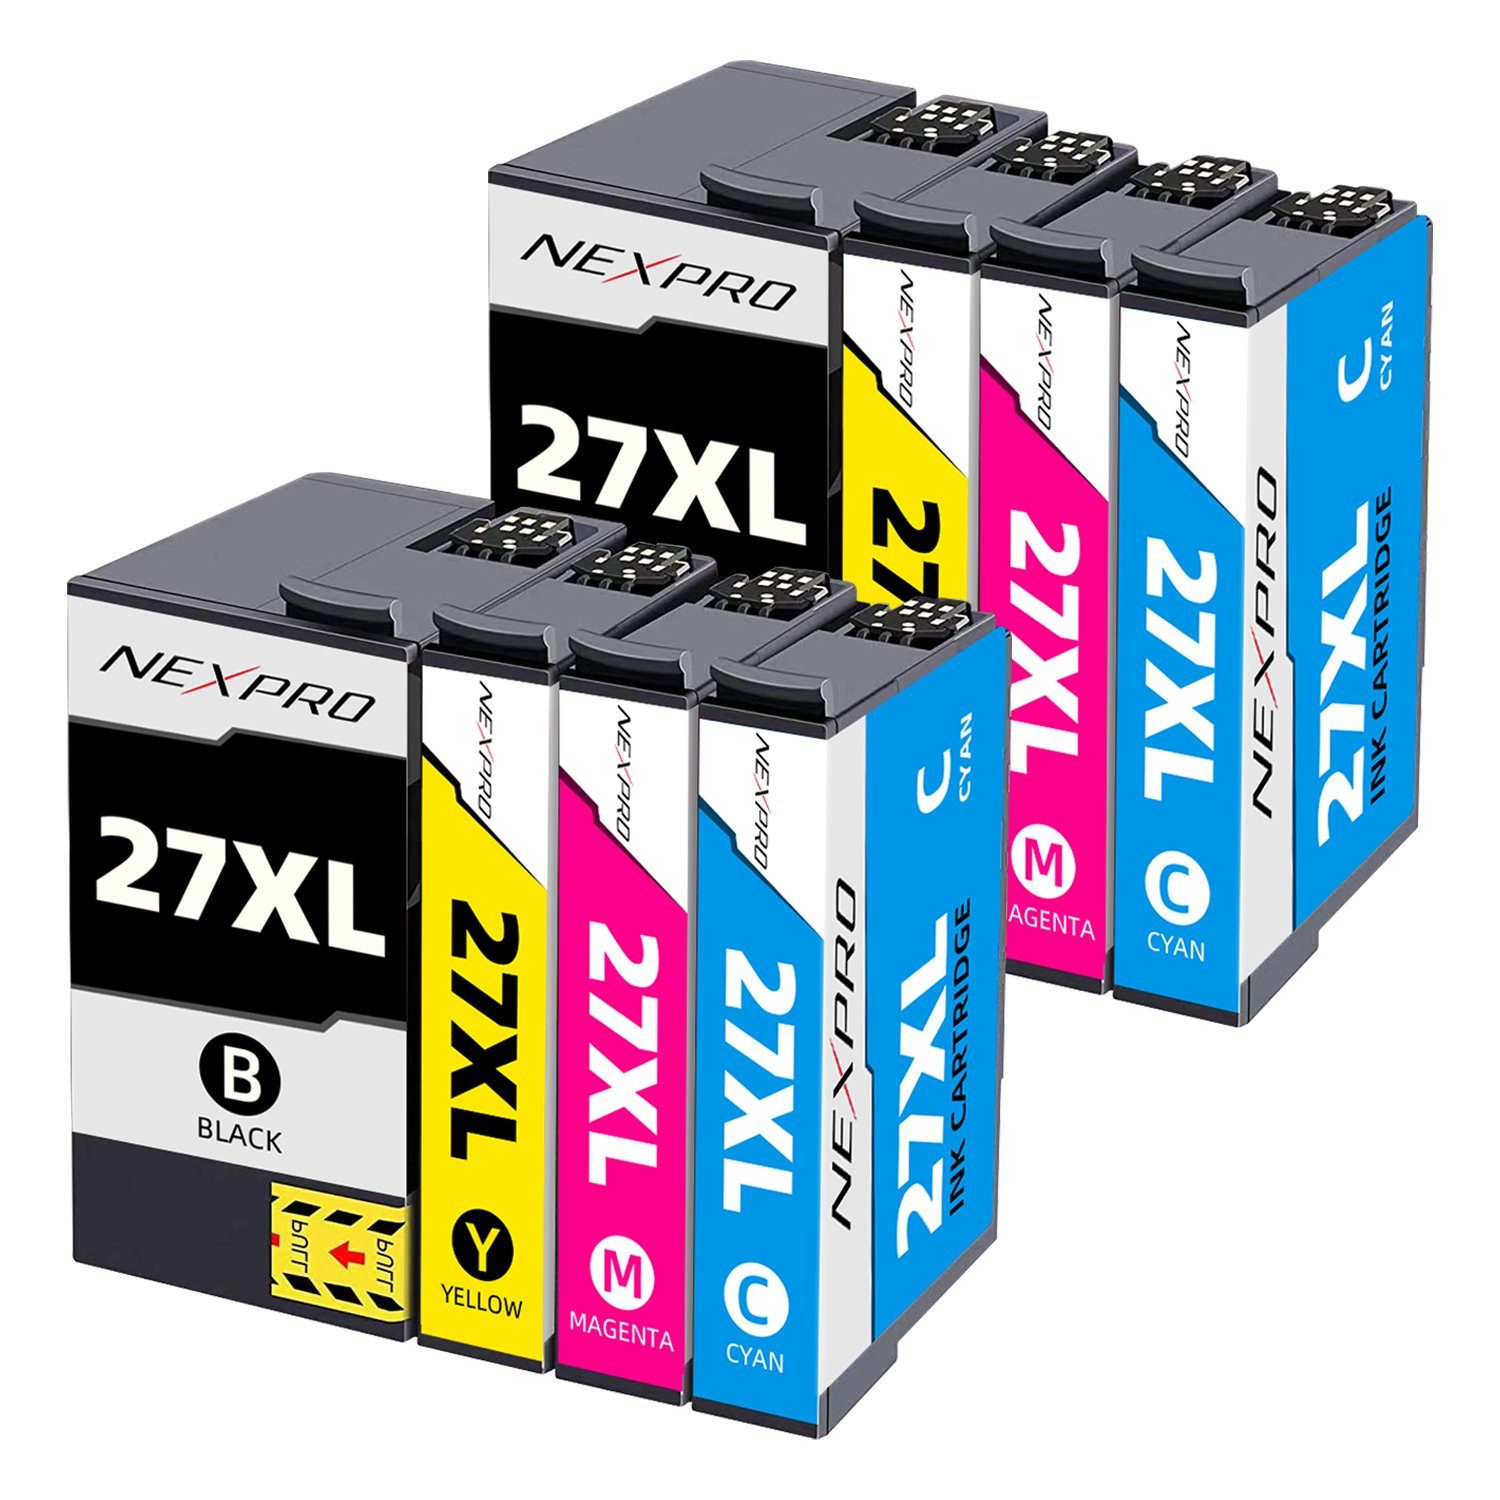 NEXPRO Epson 27 XL Druckerpatronen für WF3620DWF WF3640DTWF WF7110DTW, 8er Tintenpatrone (Packung, Epson 27 XL Druckerpatronen Multipack schwarz/magenta/cyan/yellow)